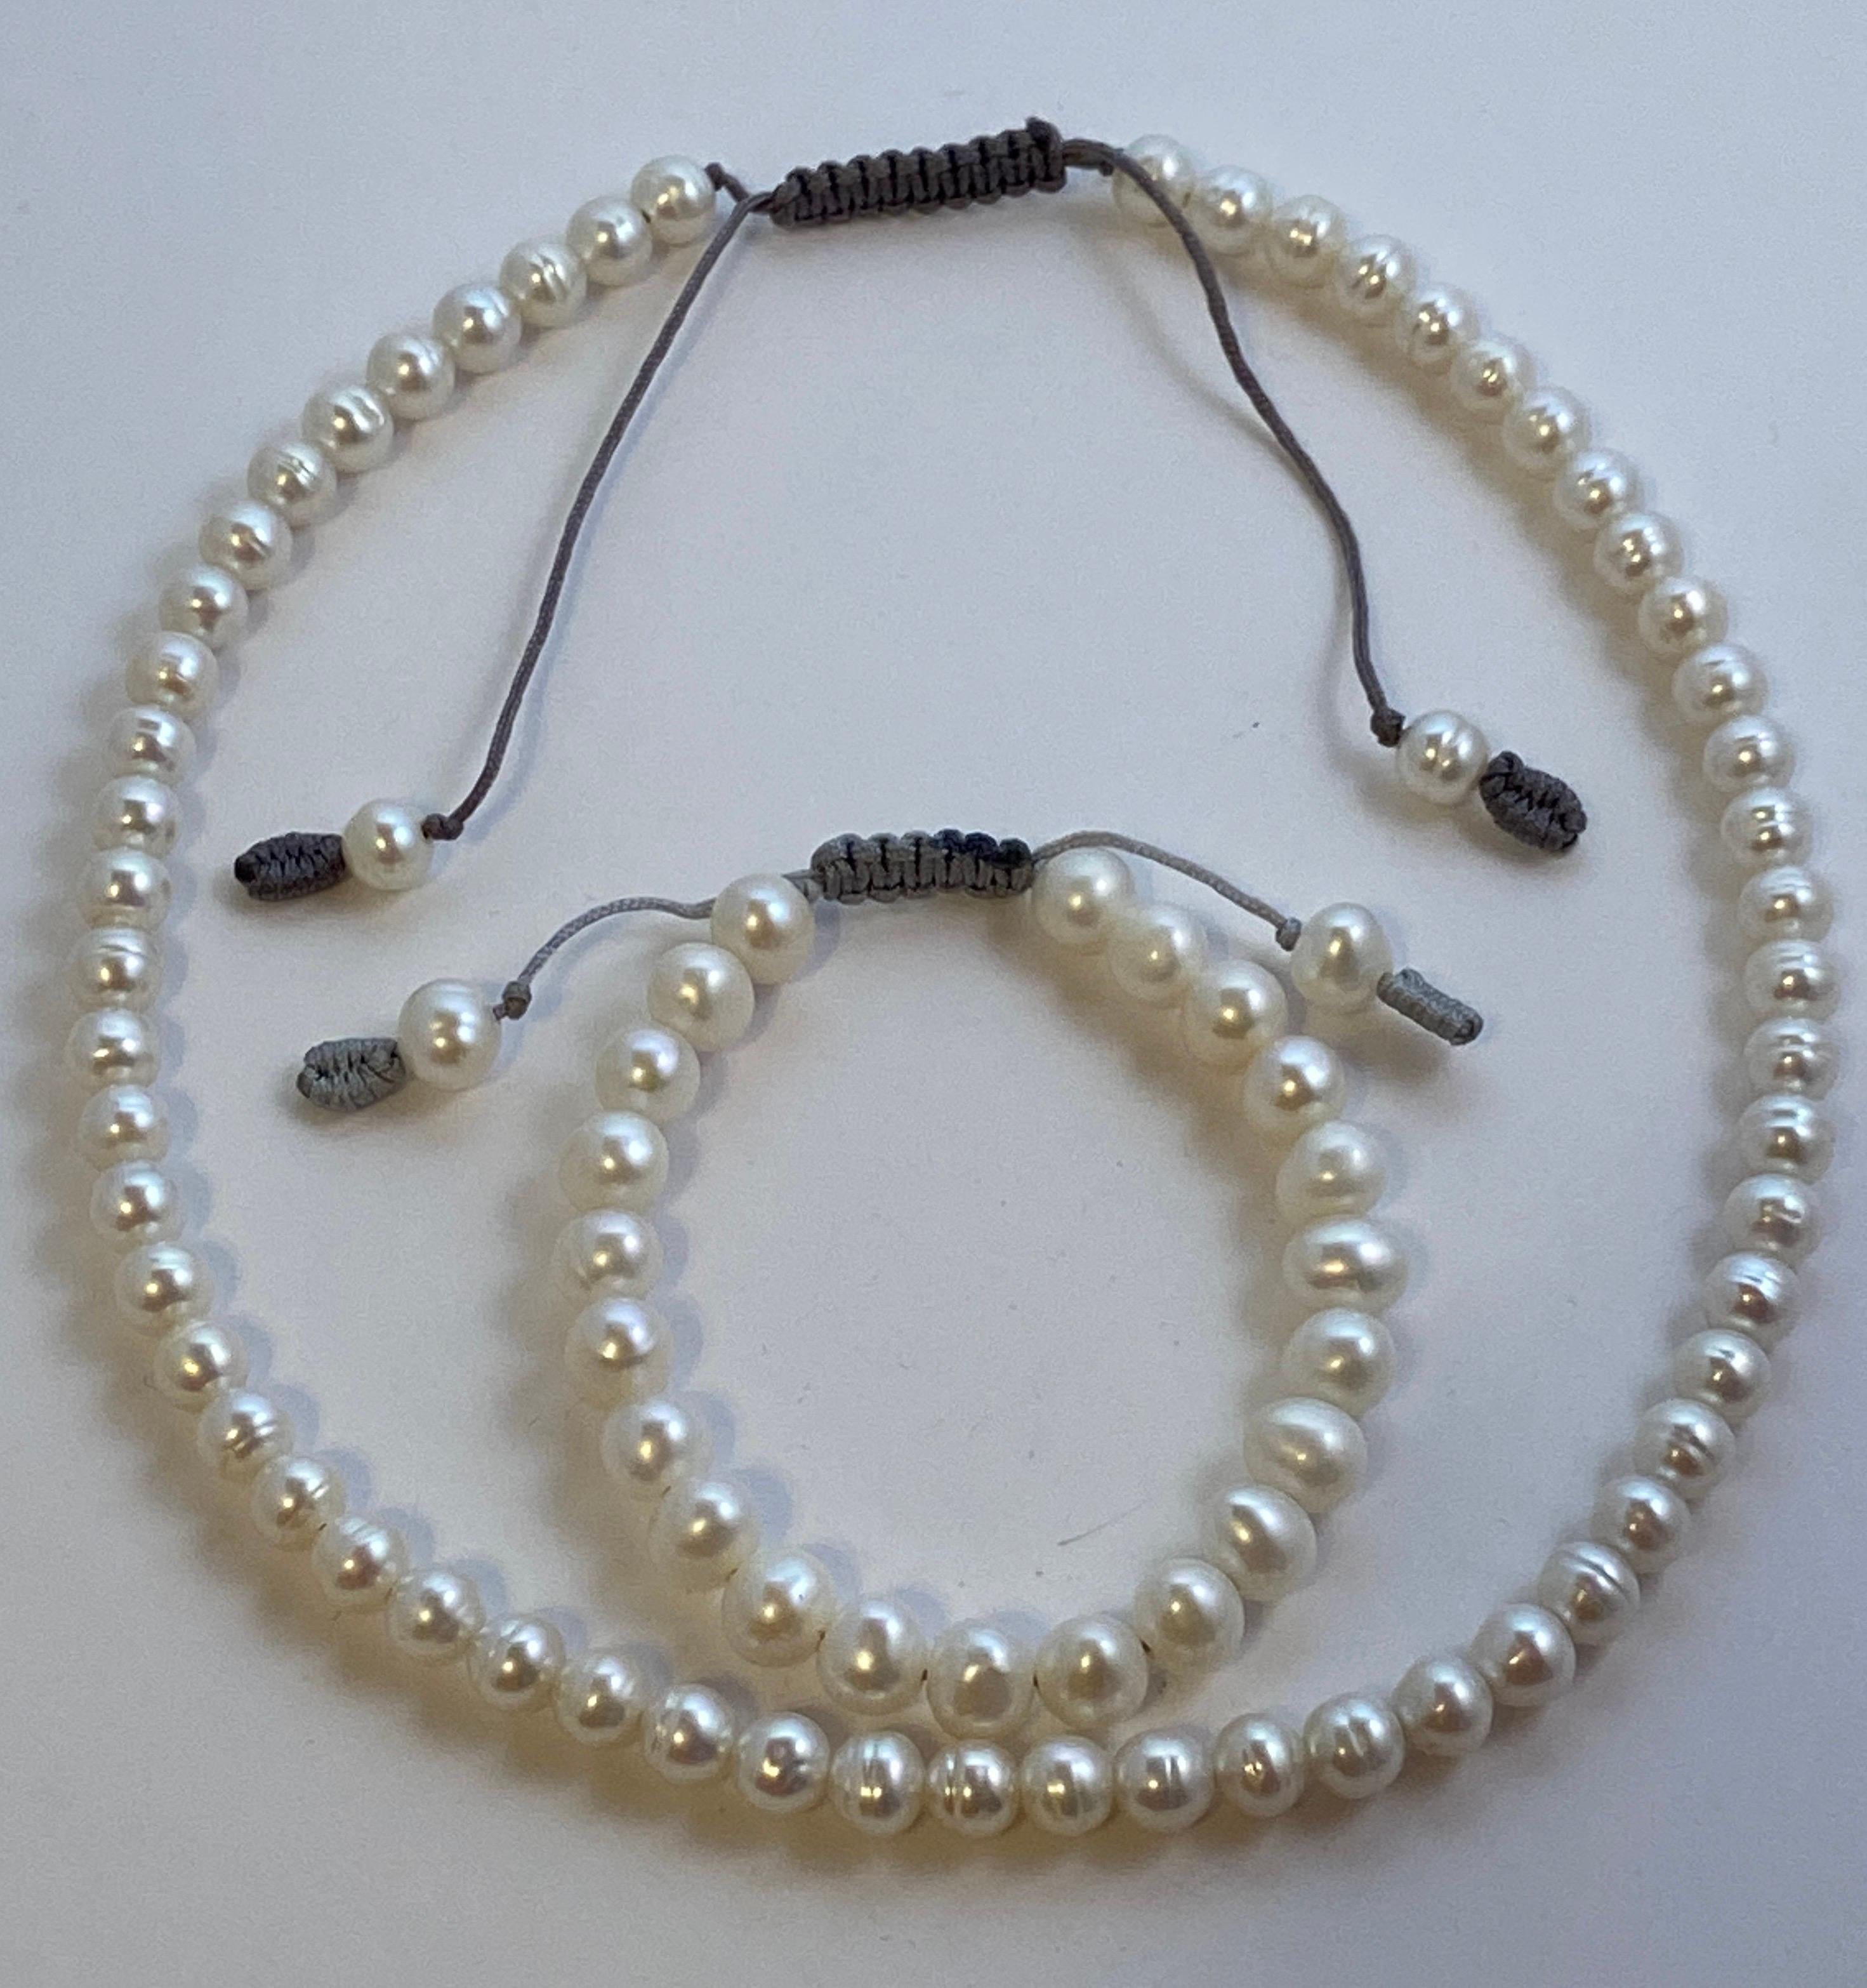 Set von Hand-strung Perlenkette mit passenden Armband Set hat verstellbare Optionen zu erweitern, wenn gewünscht. Zum Einstellen ziehen Sie einfach vorsichtig an der handgeknüpften Schnur. Die Halskette misst 17 1/2 Zoll an der kleinsten und 22 3/4